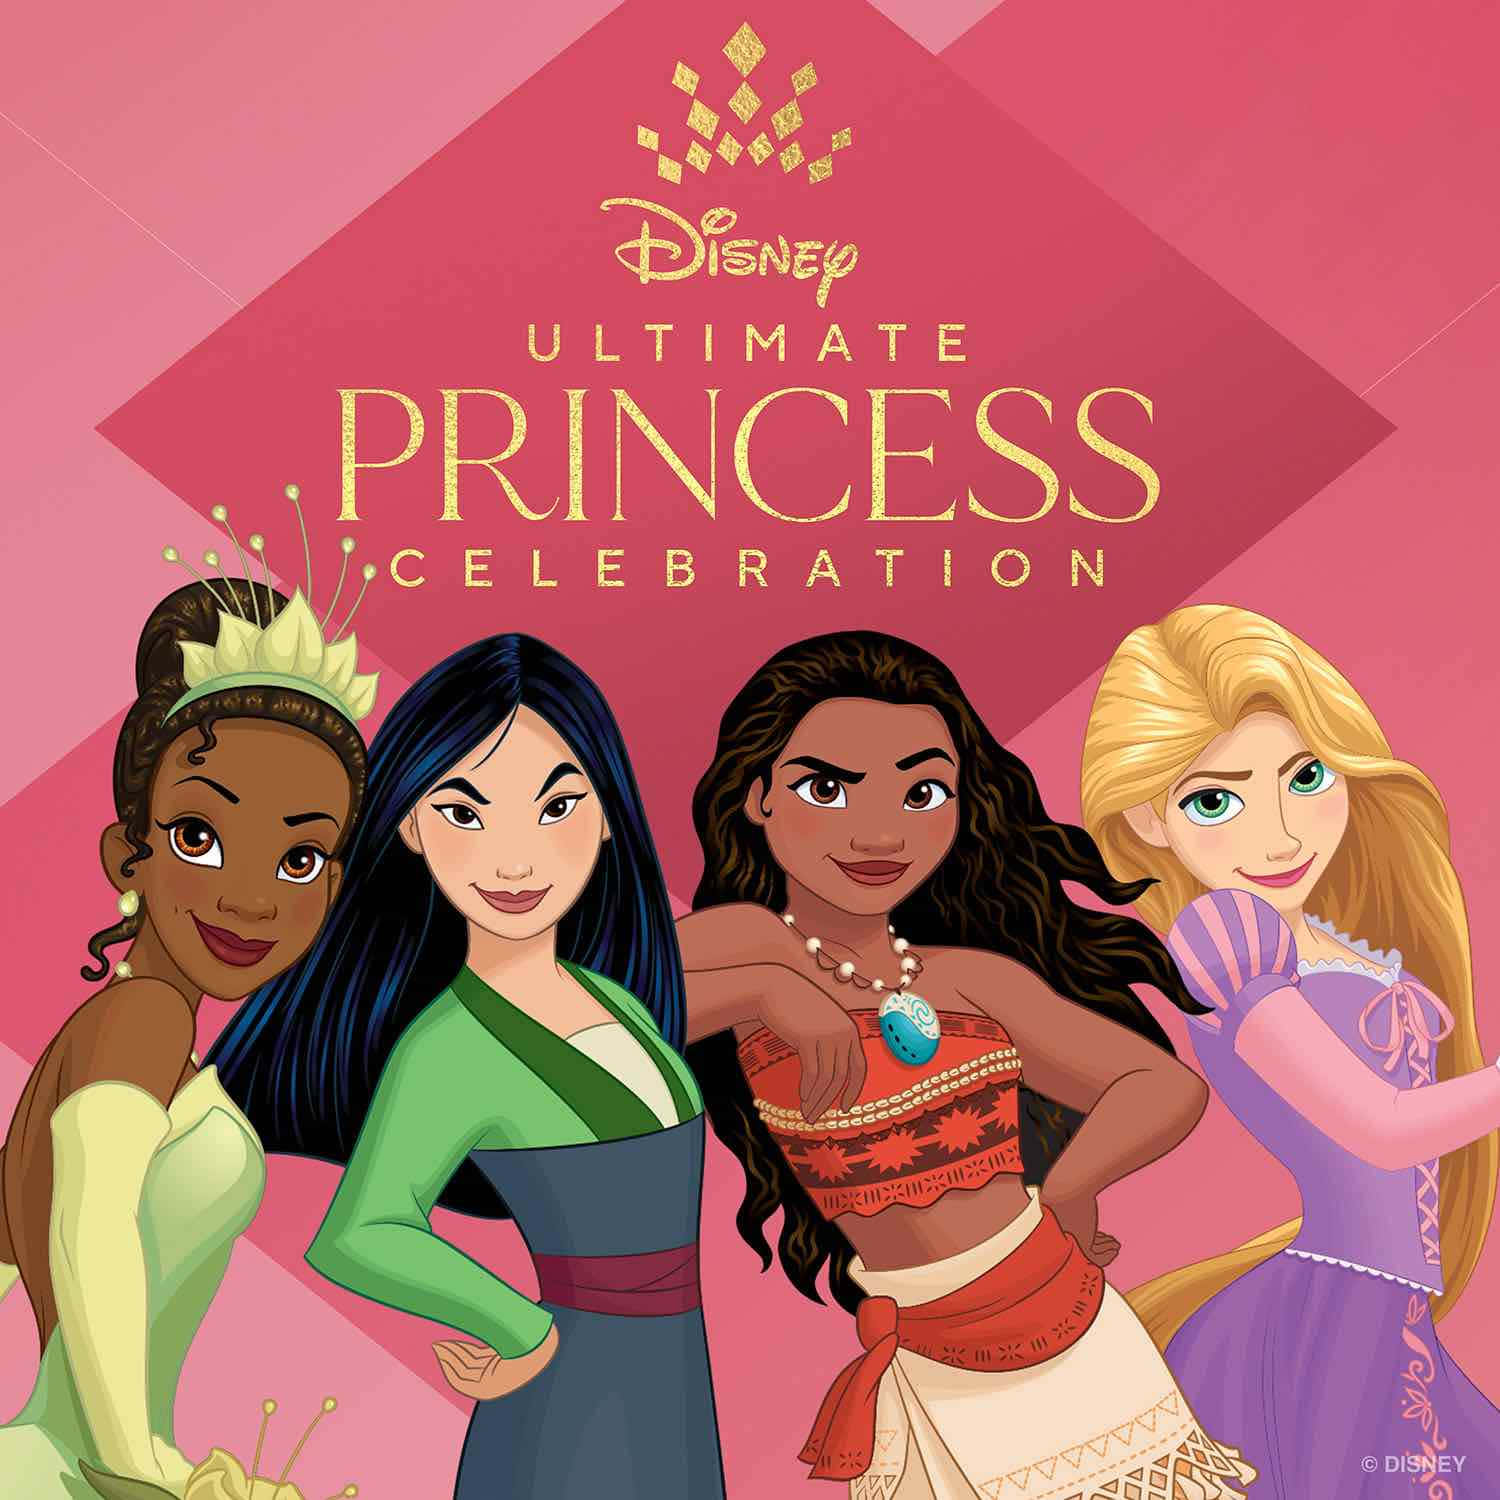 Billeder af Disney Princesser, der bevæger sig langs baggrundsbilleder.